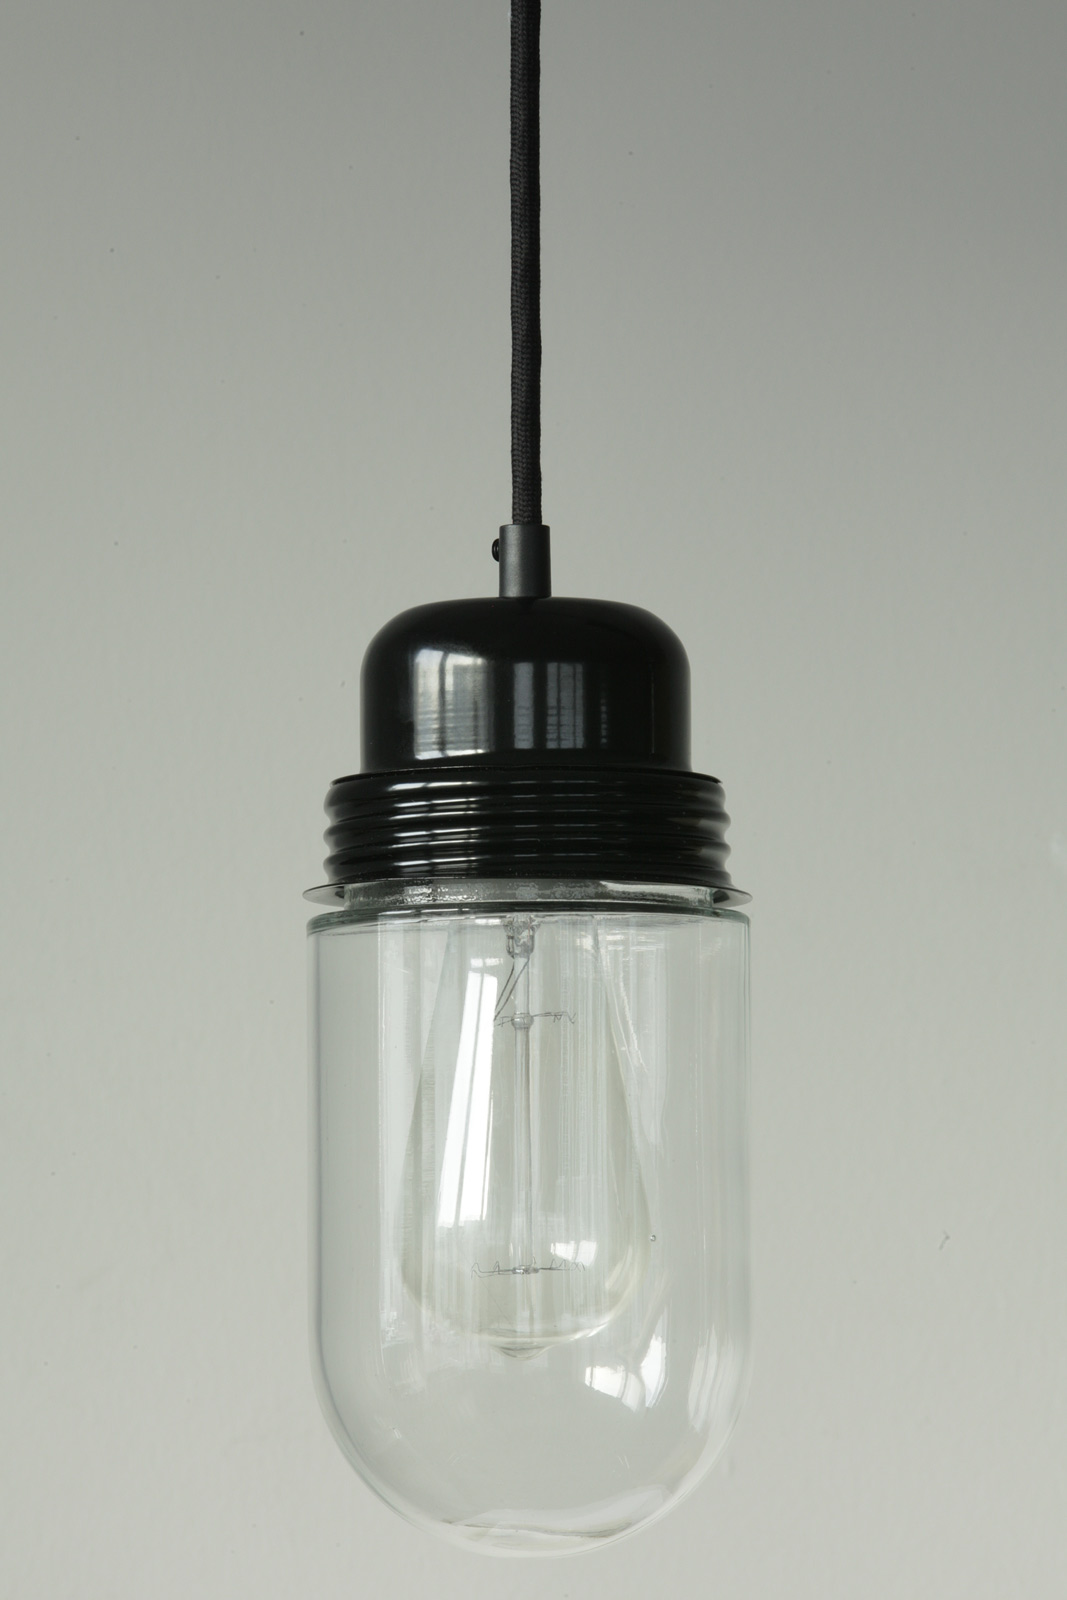 BRÜGGEN Einfache Hängeleuchte mit Schraubglas: Einfache Schraubglas-Hängeleuchte, Aufhängung am schwarzen Textil-Kabel